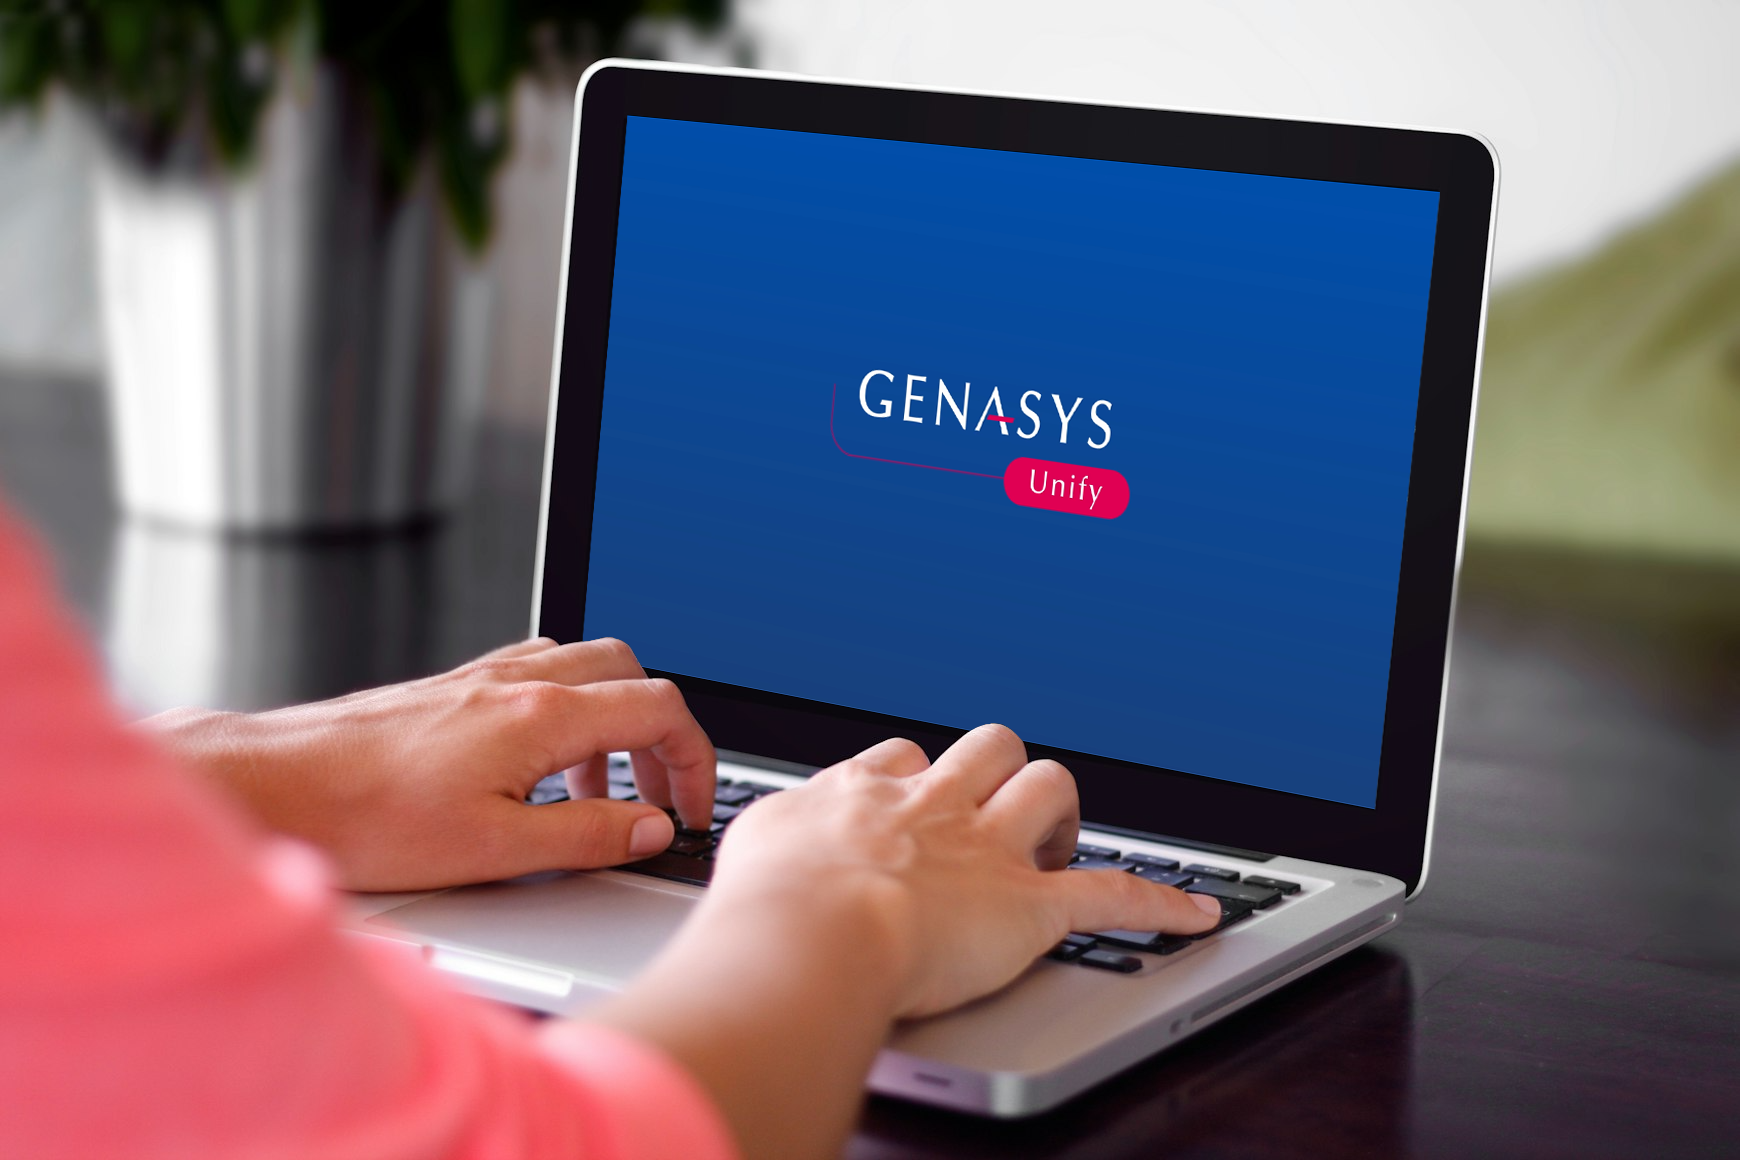 Genasys Announces Latest Core Platform Release, Genasys Unify